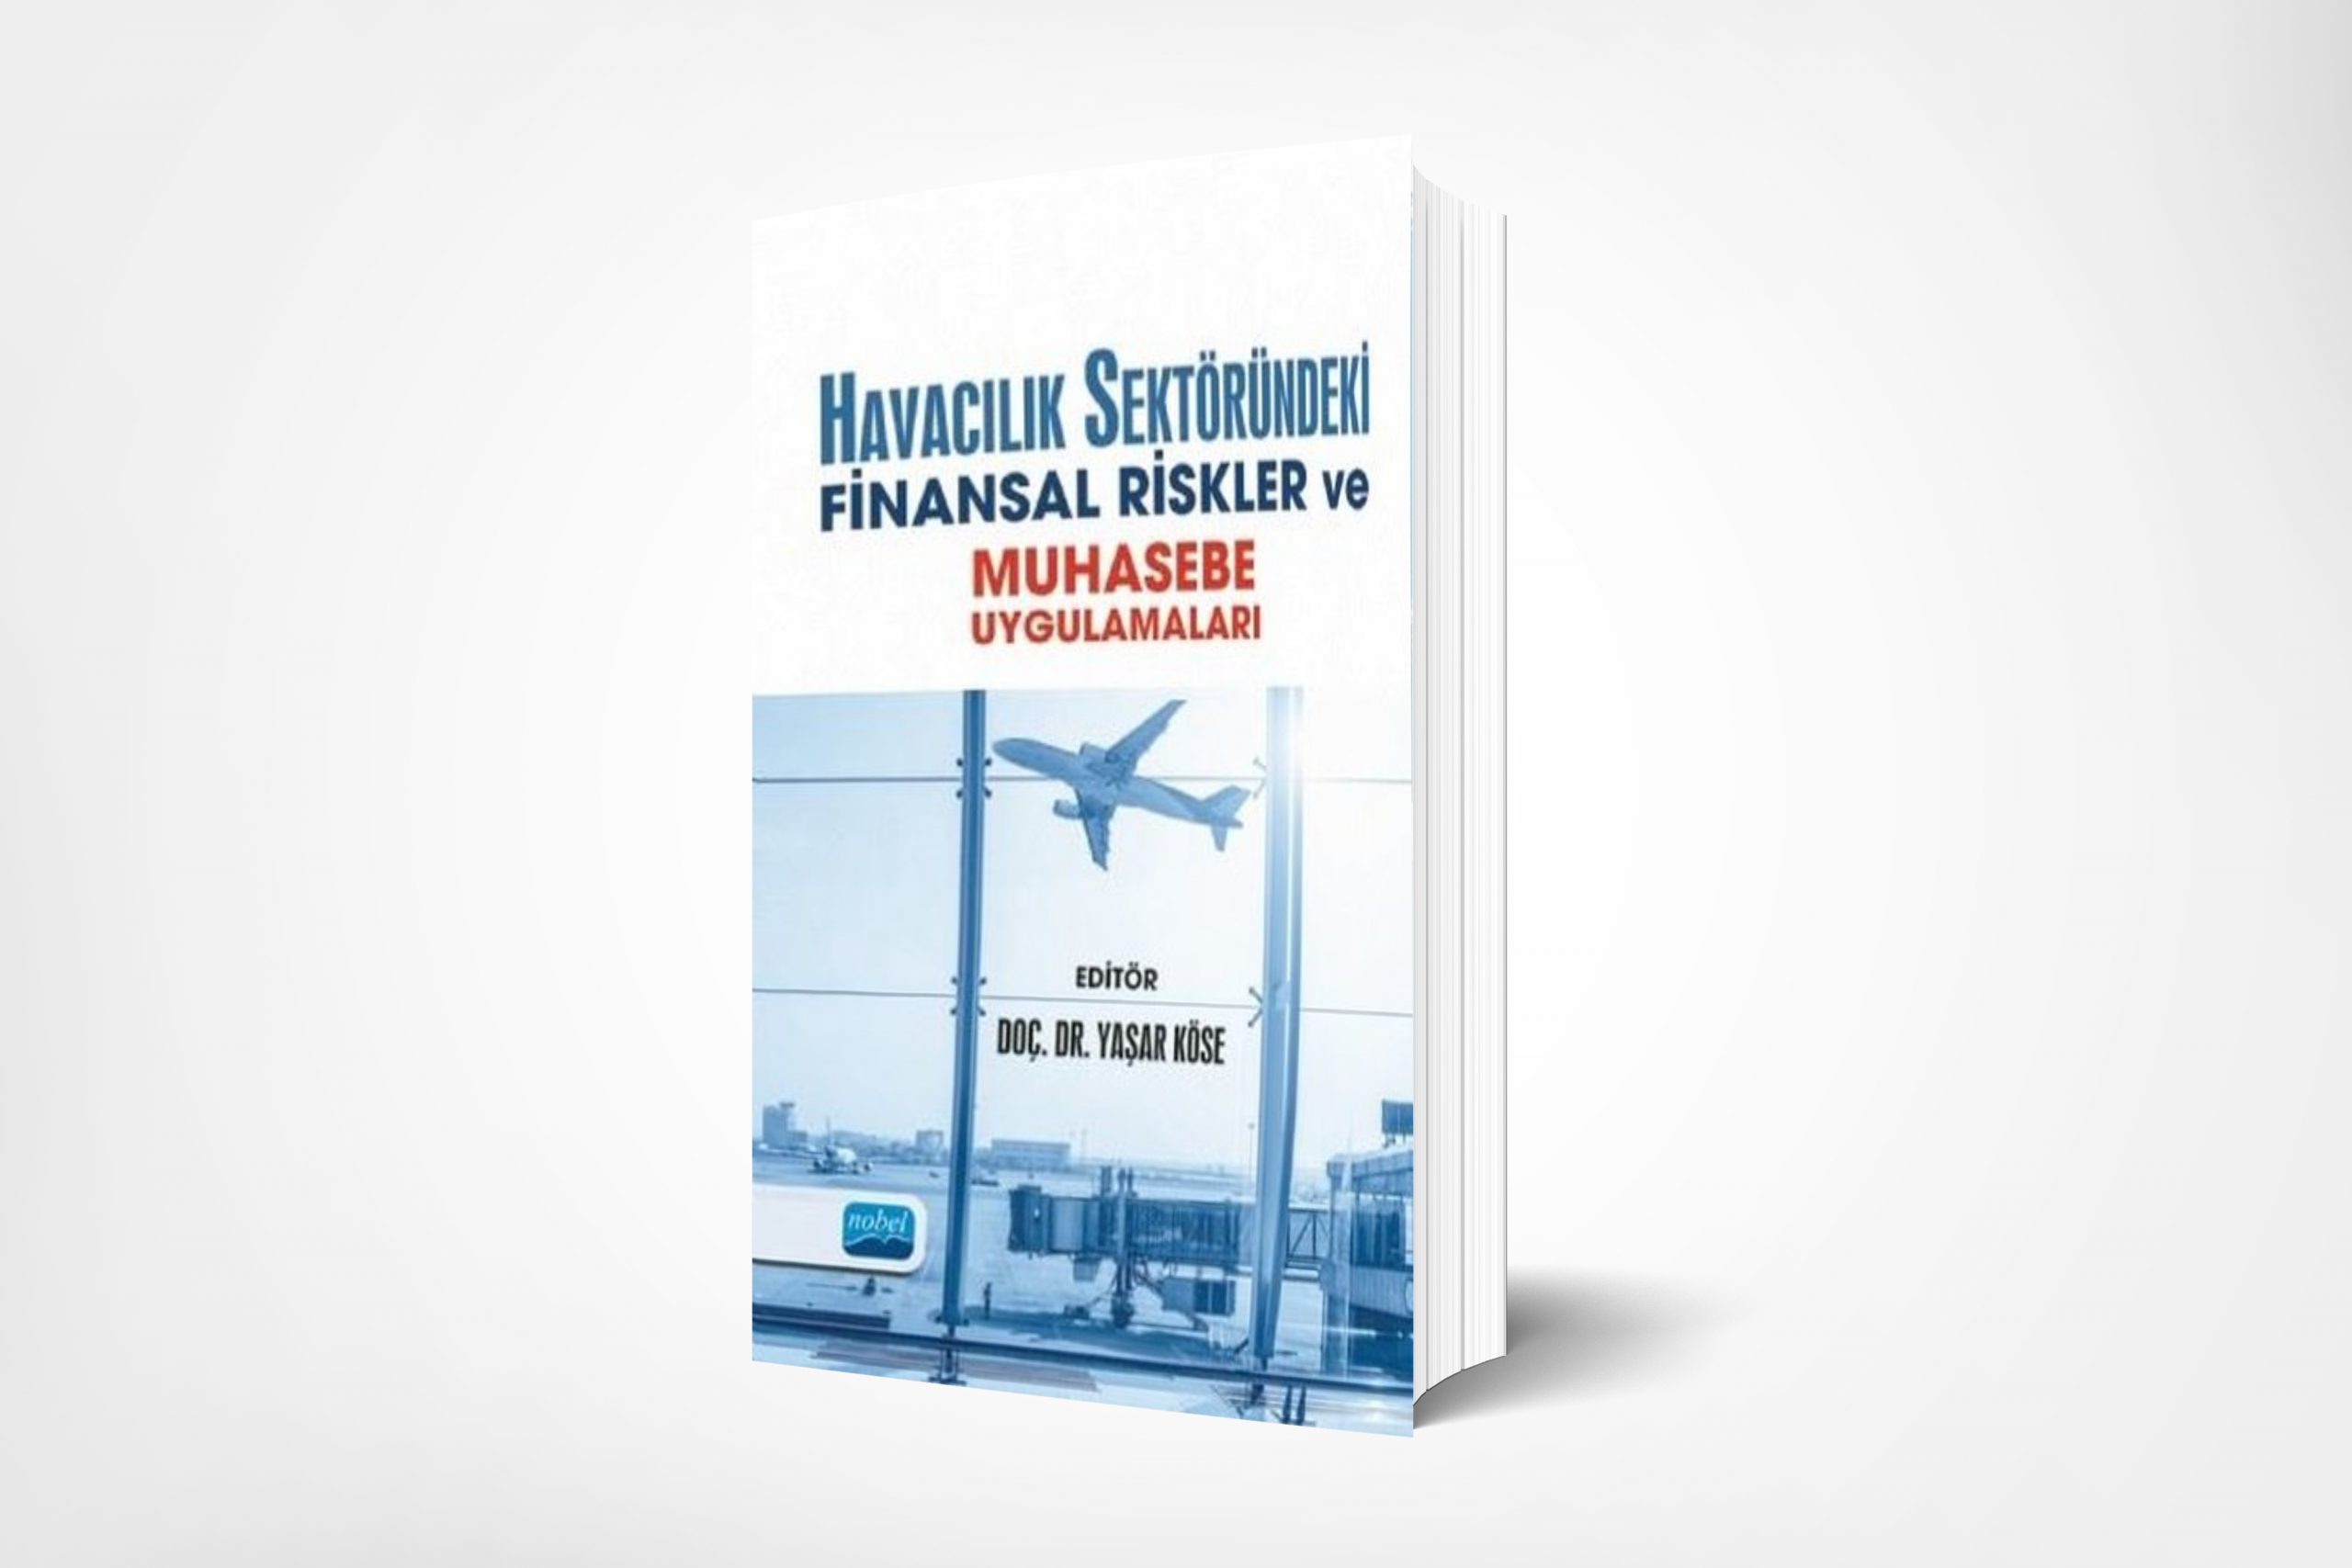 Havacılık Sektöründeki Finansal Riskler ve Muhasebe Uygulamaları (Financial Risks and Accounting Practices in the Aviation Sector)